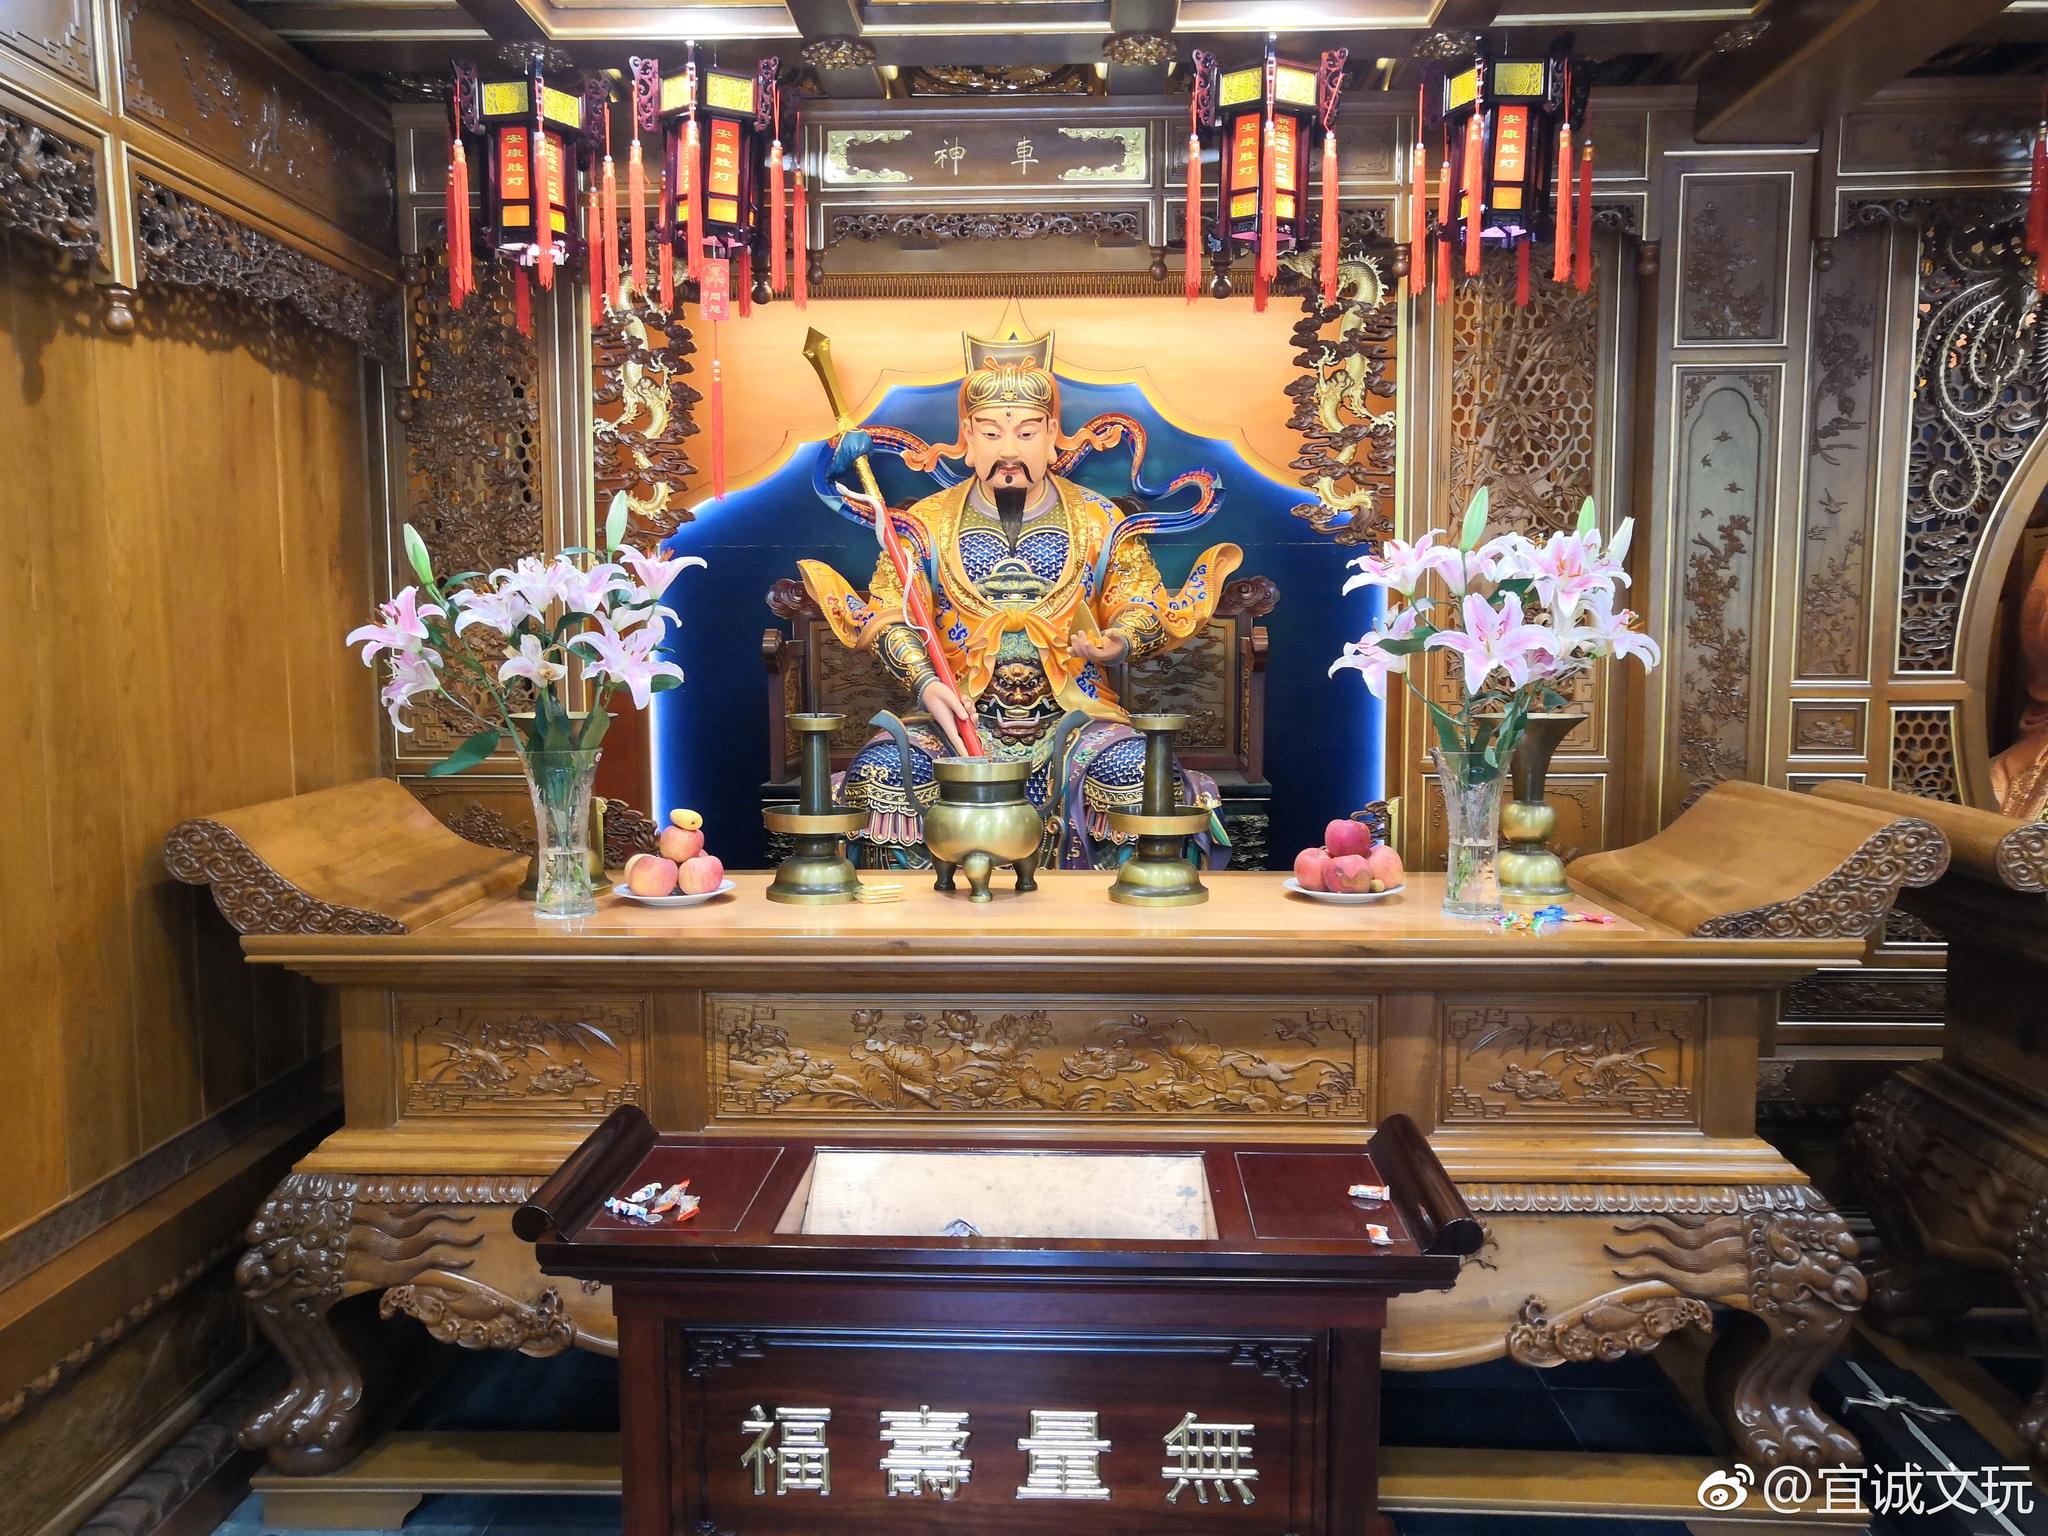 【携程攻略】上海城隍庙旅游区景点,城隍庙景区包含上海老街、老城隍庙、豫园。进入城隍庙、豫园是要门票…